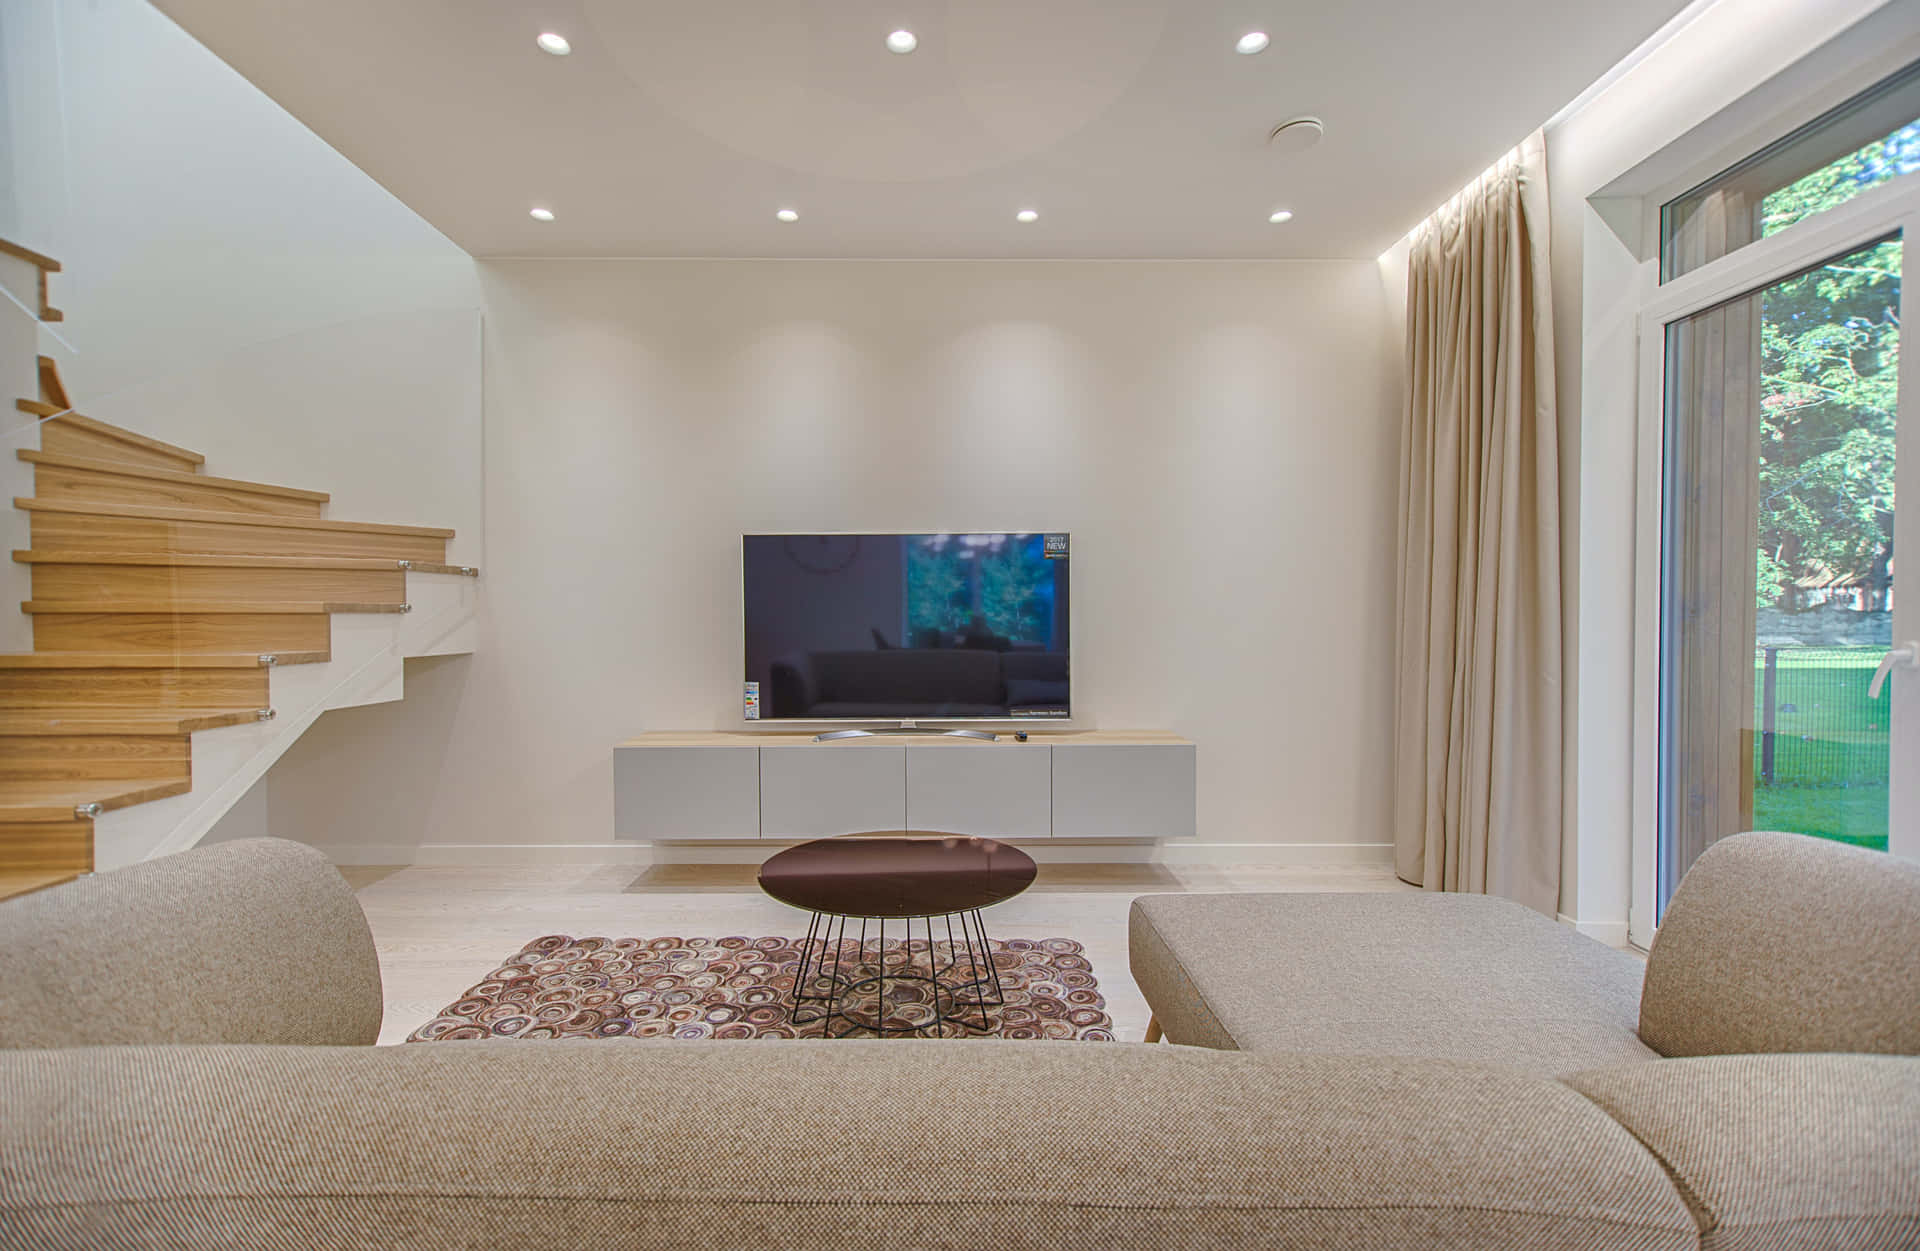 Minimalist Living Room Interior Wallpaper